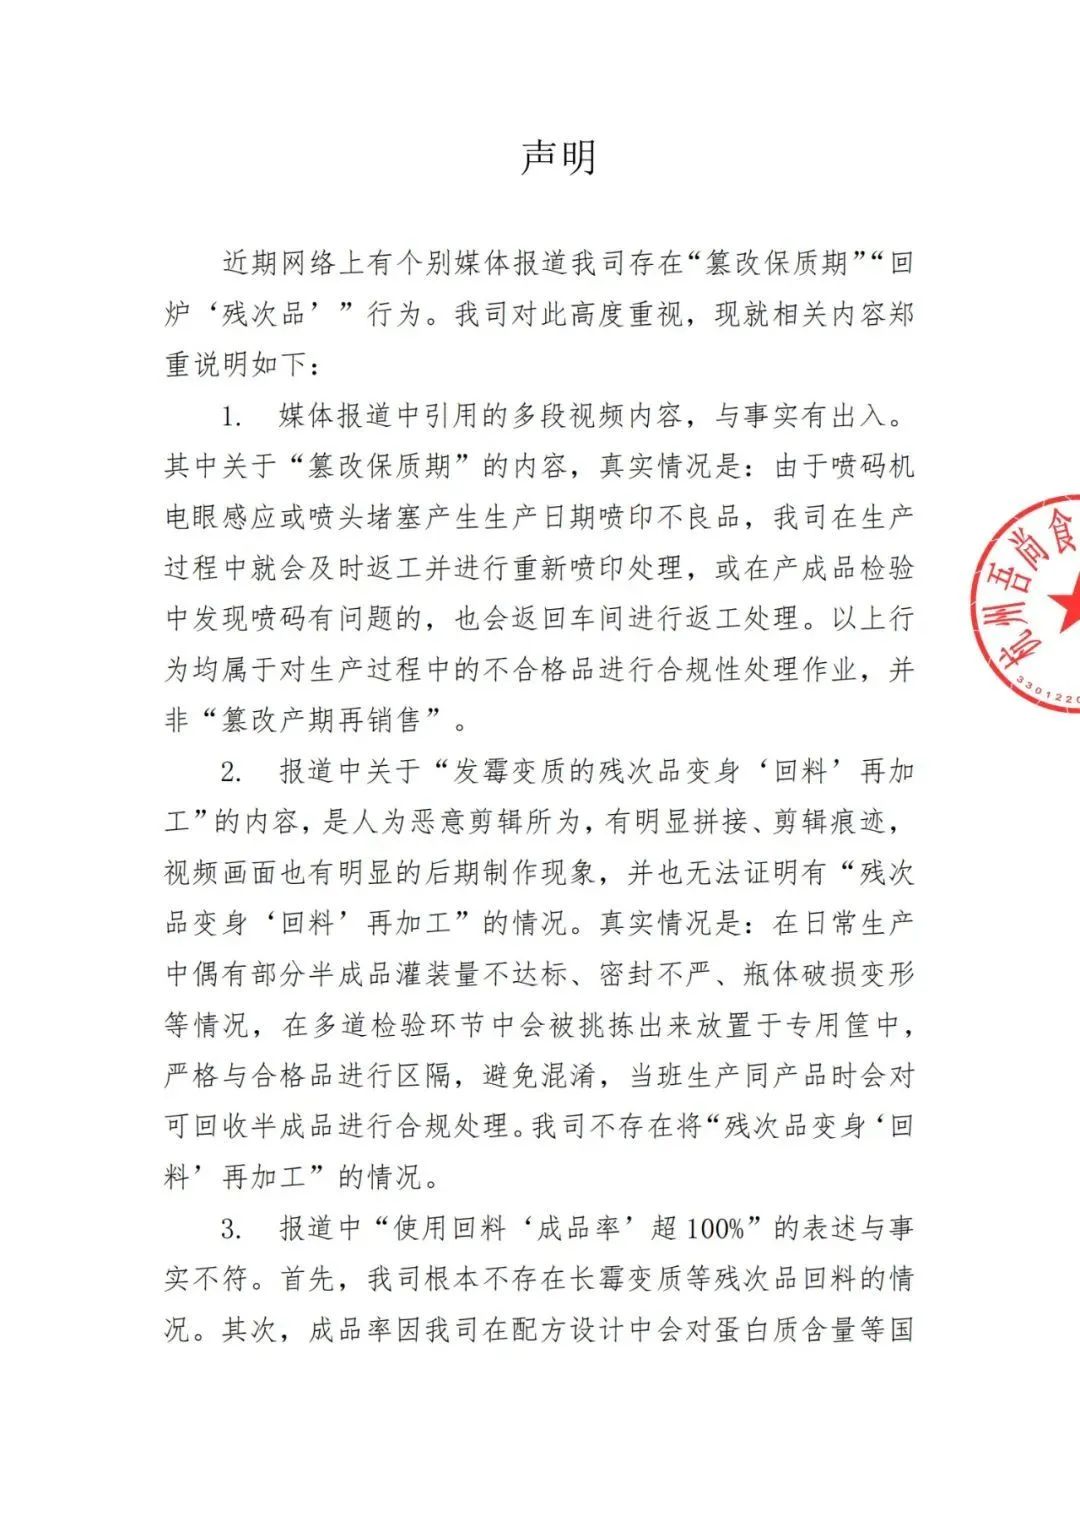 各方回应“举报杭州一企业存在发霉乳酸菌当原料、改动出产日期等问题”